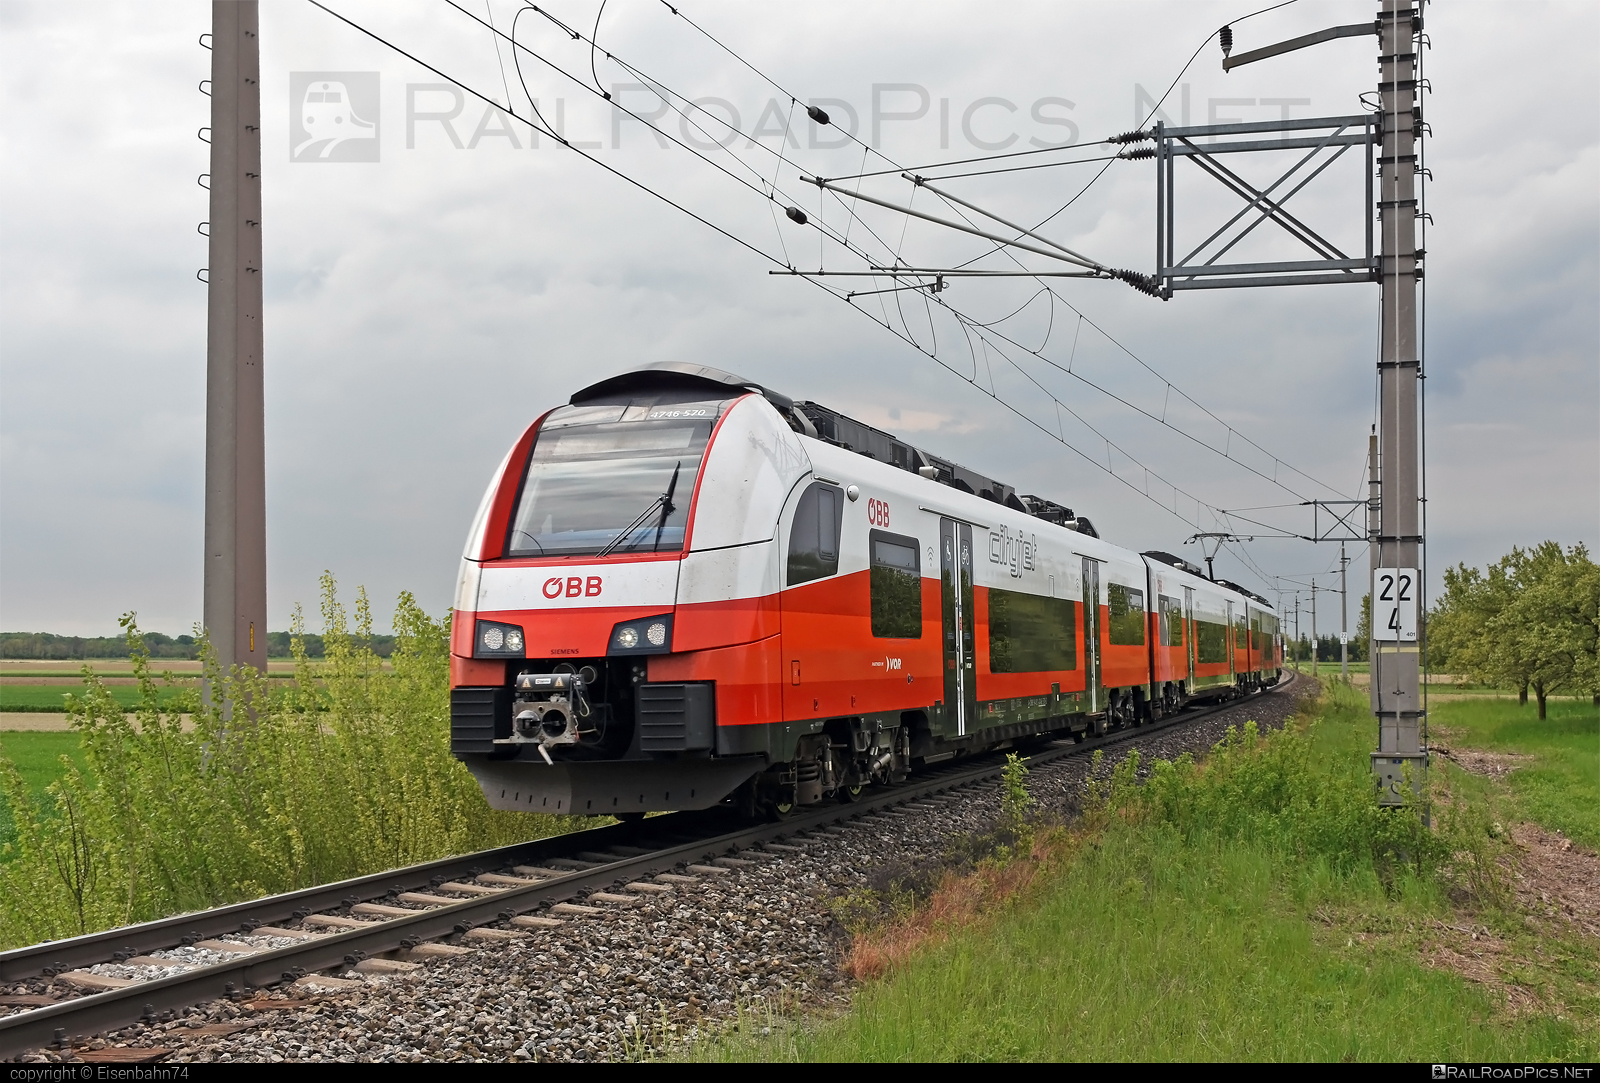 Siemens Desiro ML - 4746 570 operated by Österreichische Bundesbahnen #cityjet #desiro #desiroml #obb #obbcityjet #osterreichischebundesbahnen #siemens #siemensdesiro #siemensdesiroml